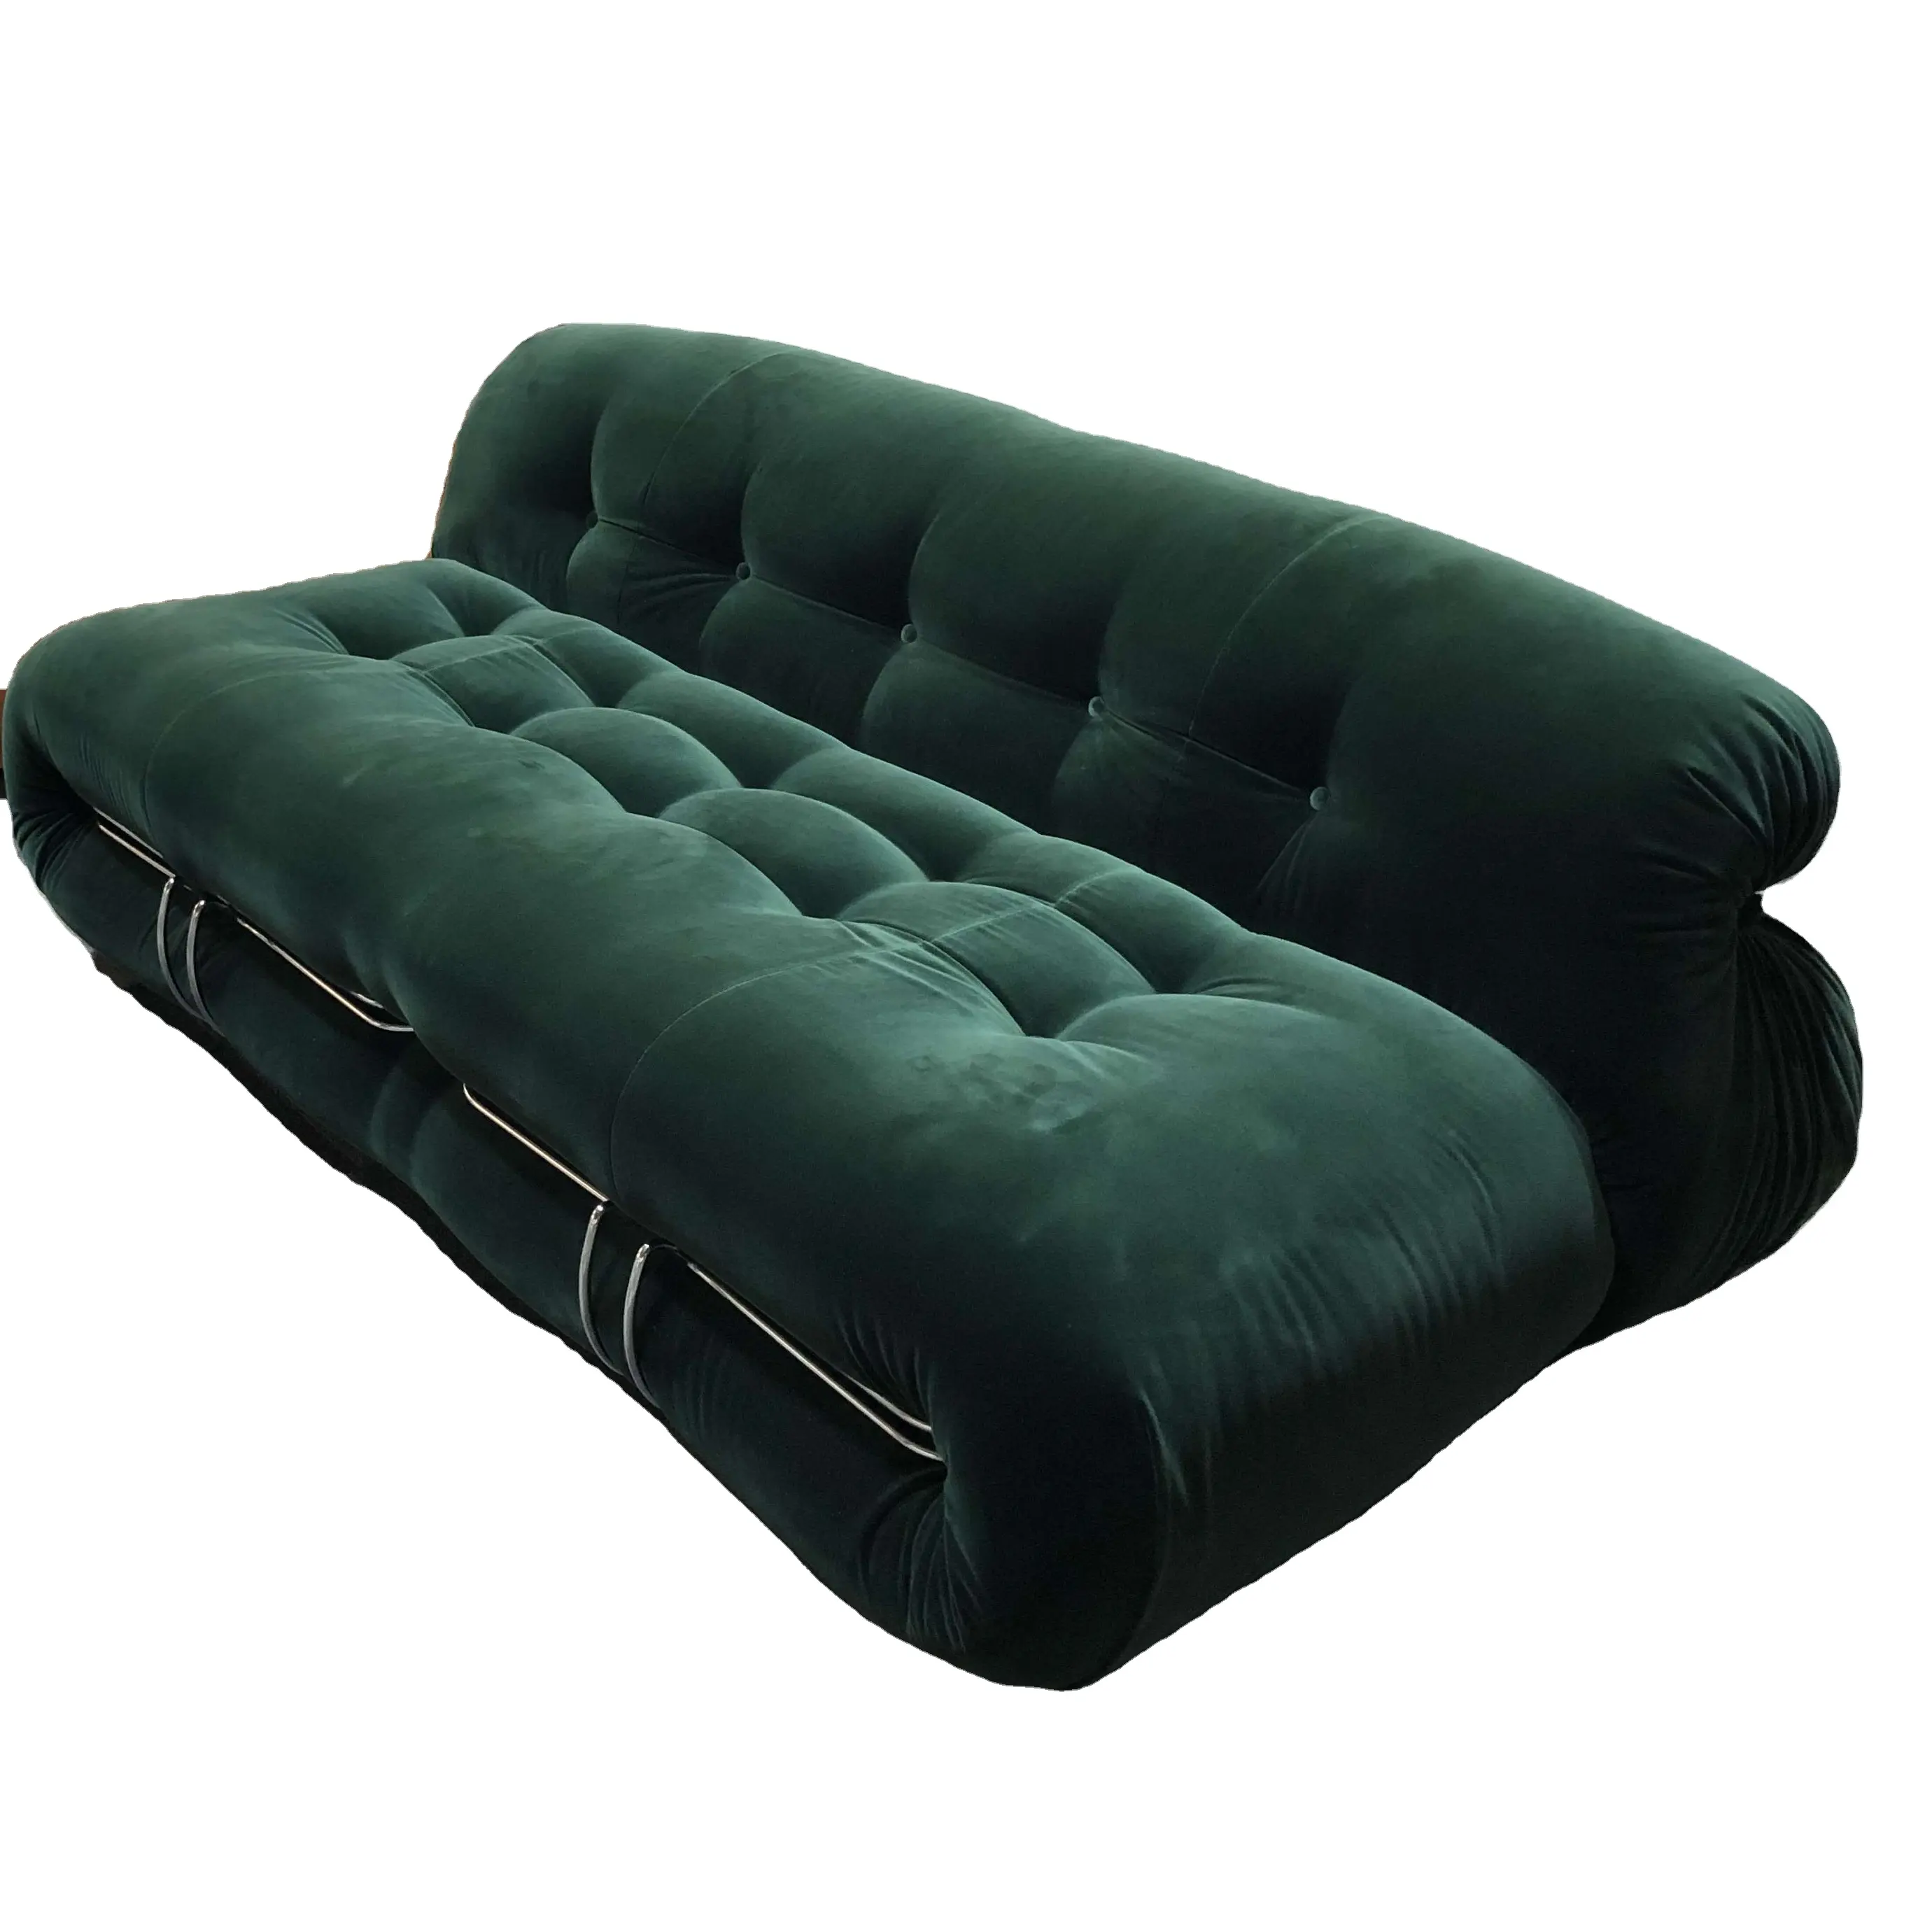 Runxi-Conjunto de sofás de diseño moderno para sala de estar, sofá modular Seccional de tela de cuero, sofá Soriana Afra Tobia